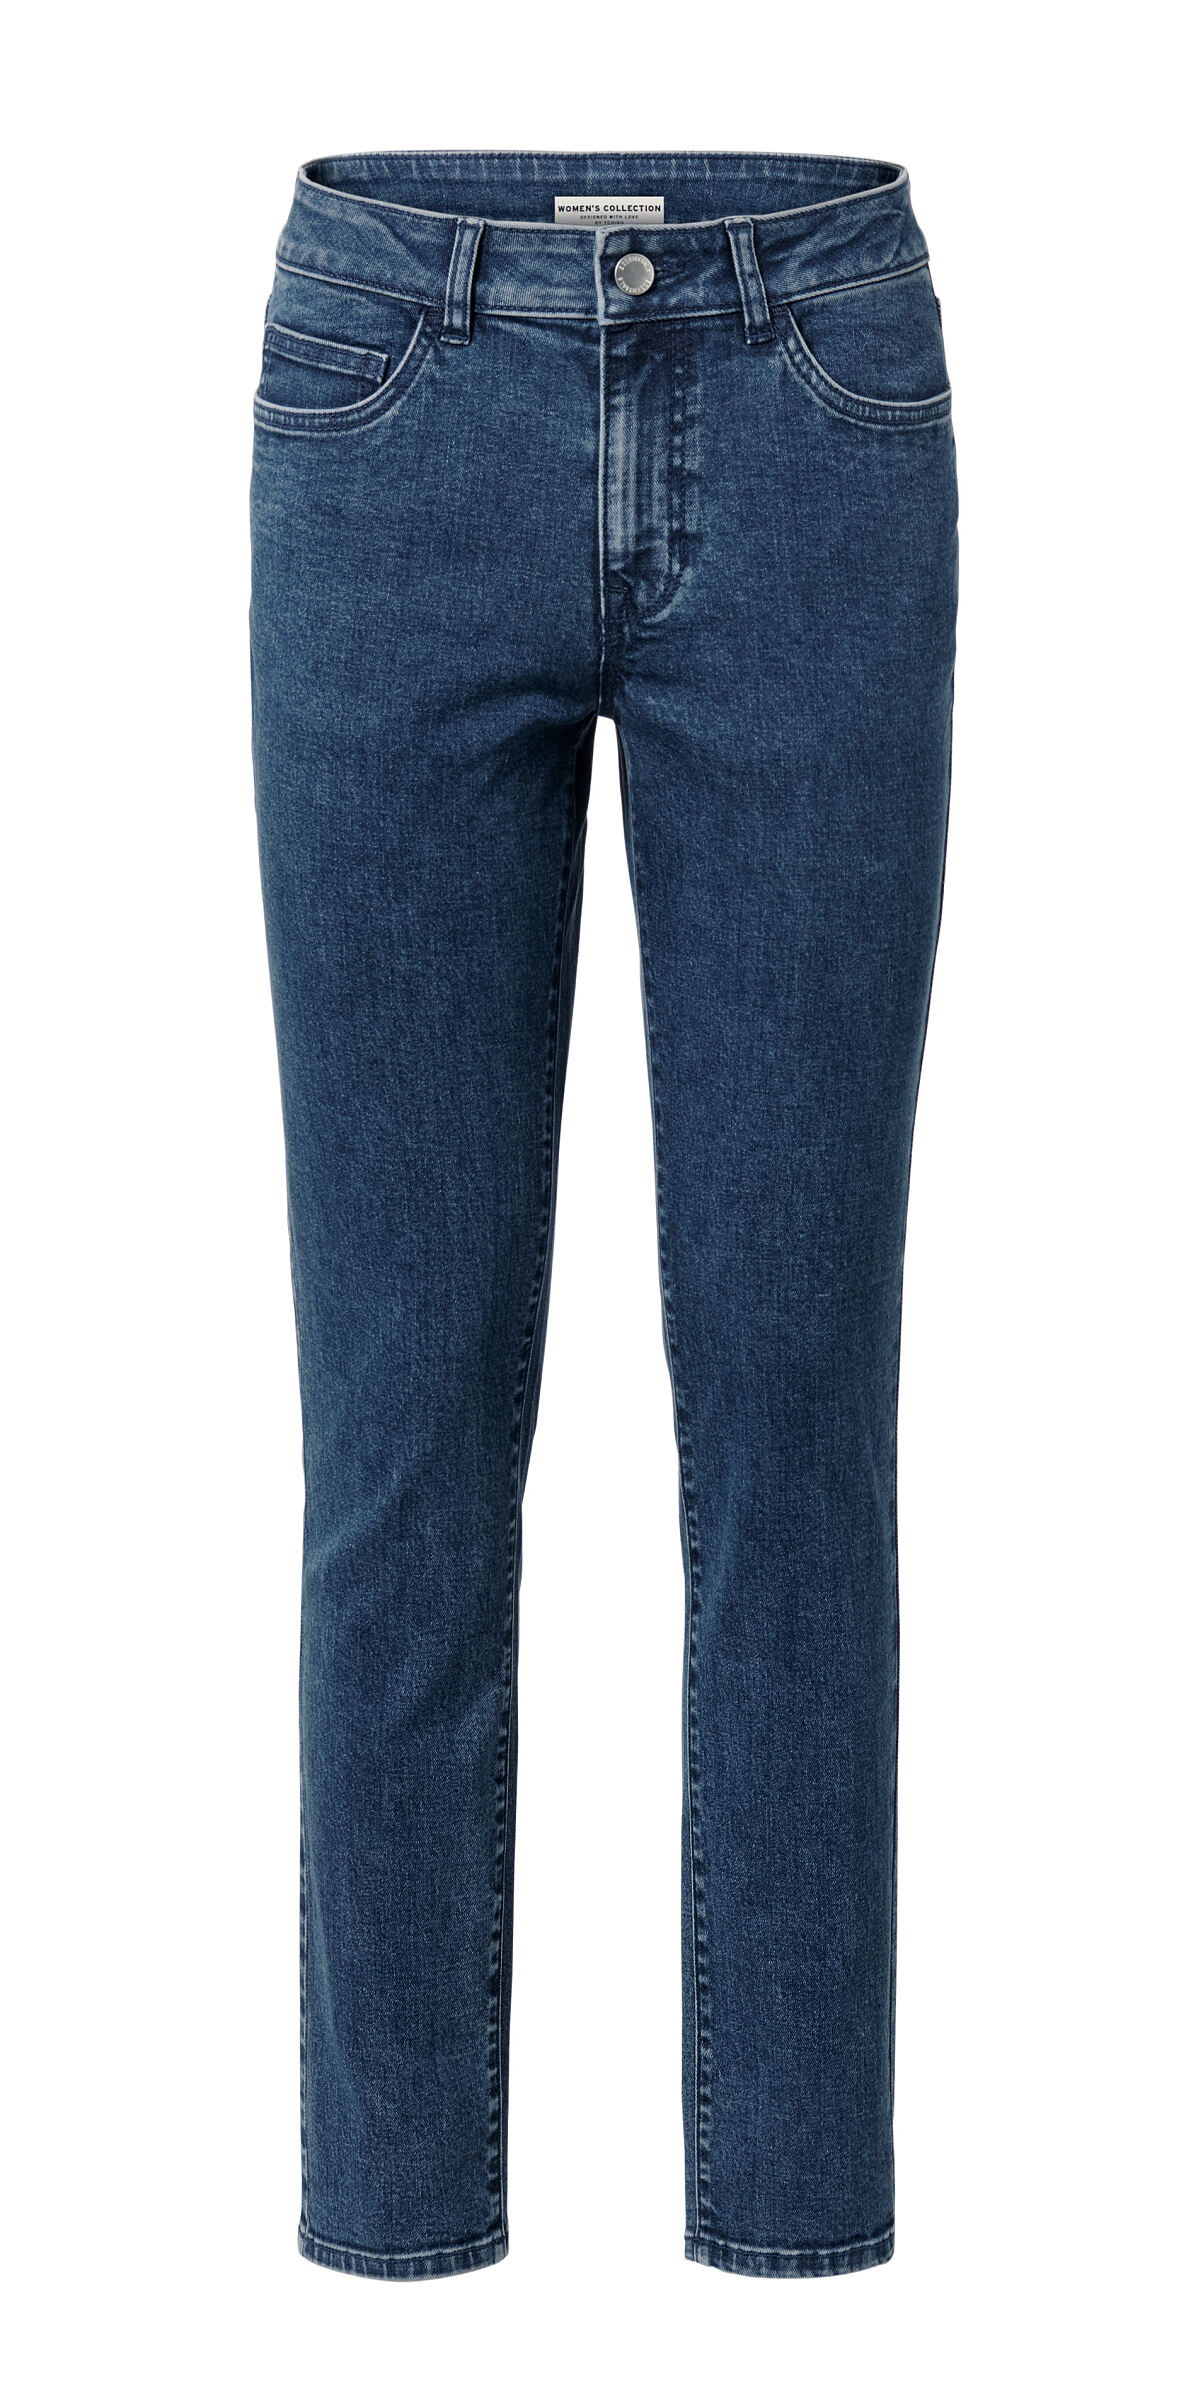 135174 Jeans slimfit Midblue FS 1 05.24